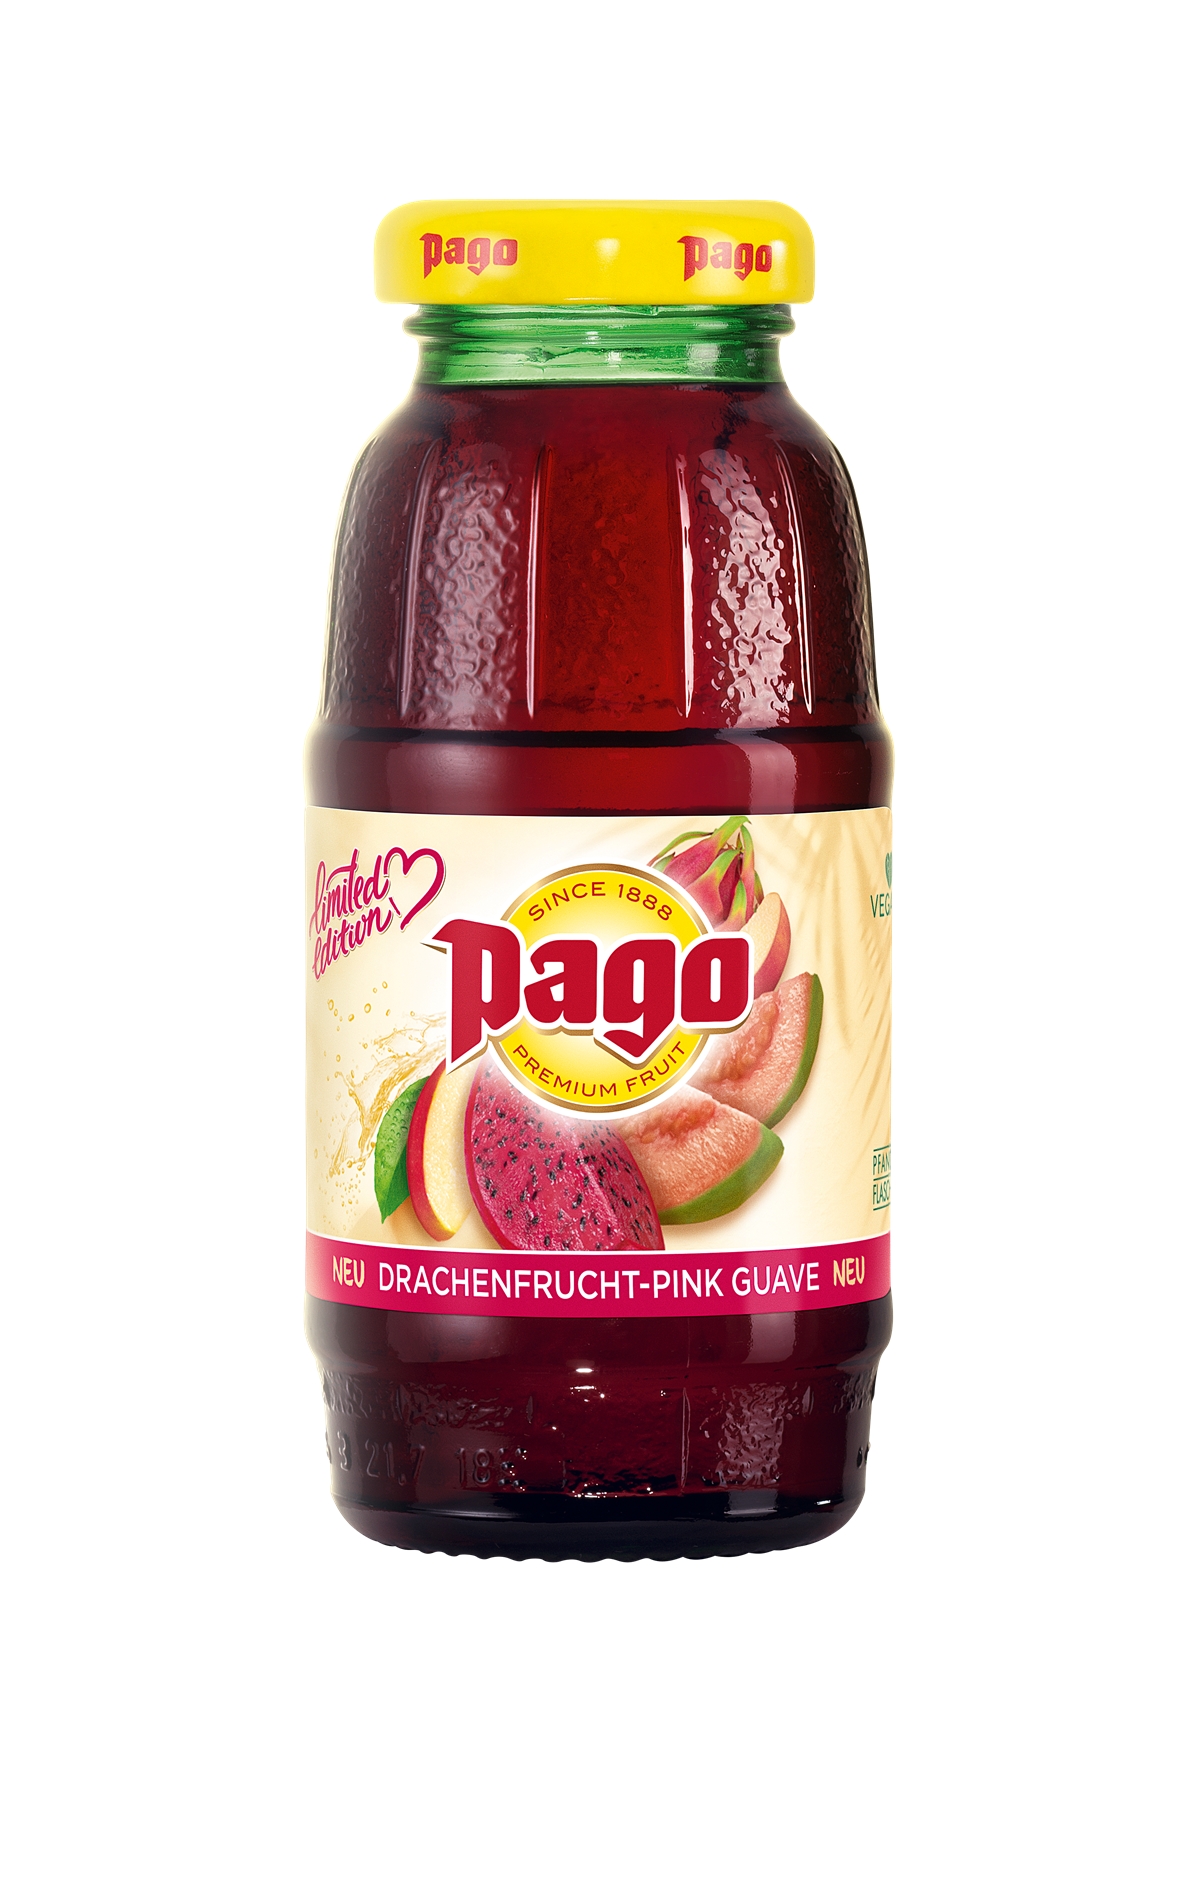 Die neue Limited Edition von PAGO: Drachenfrucht-Pink Guave